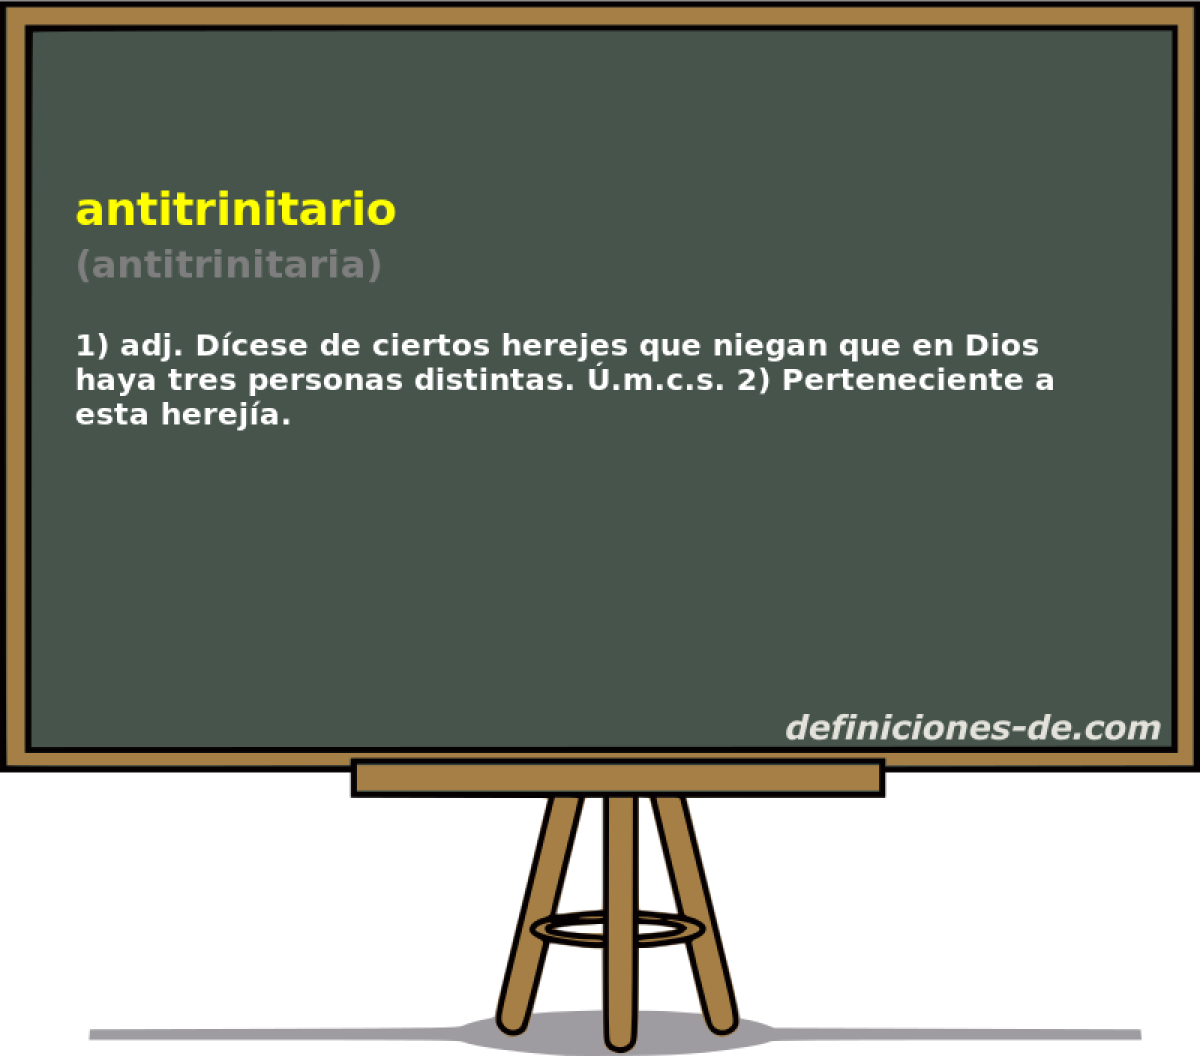 antitrinitario (antitrinitaria)